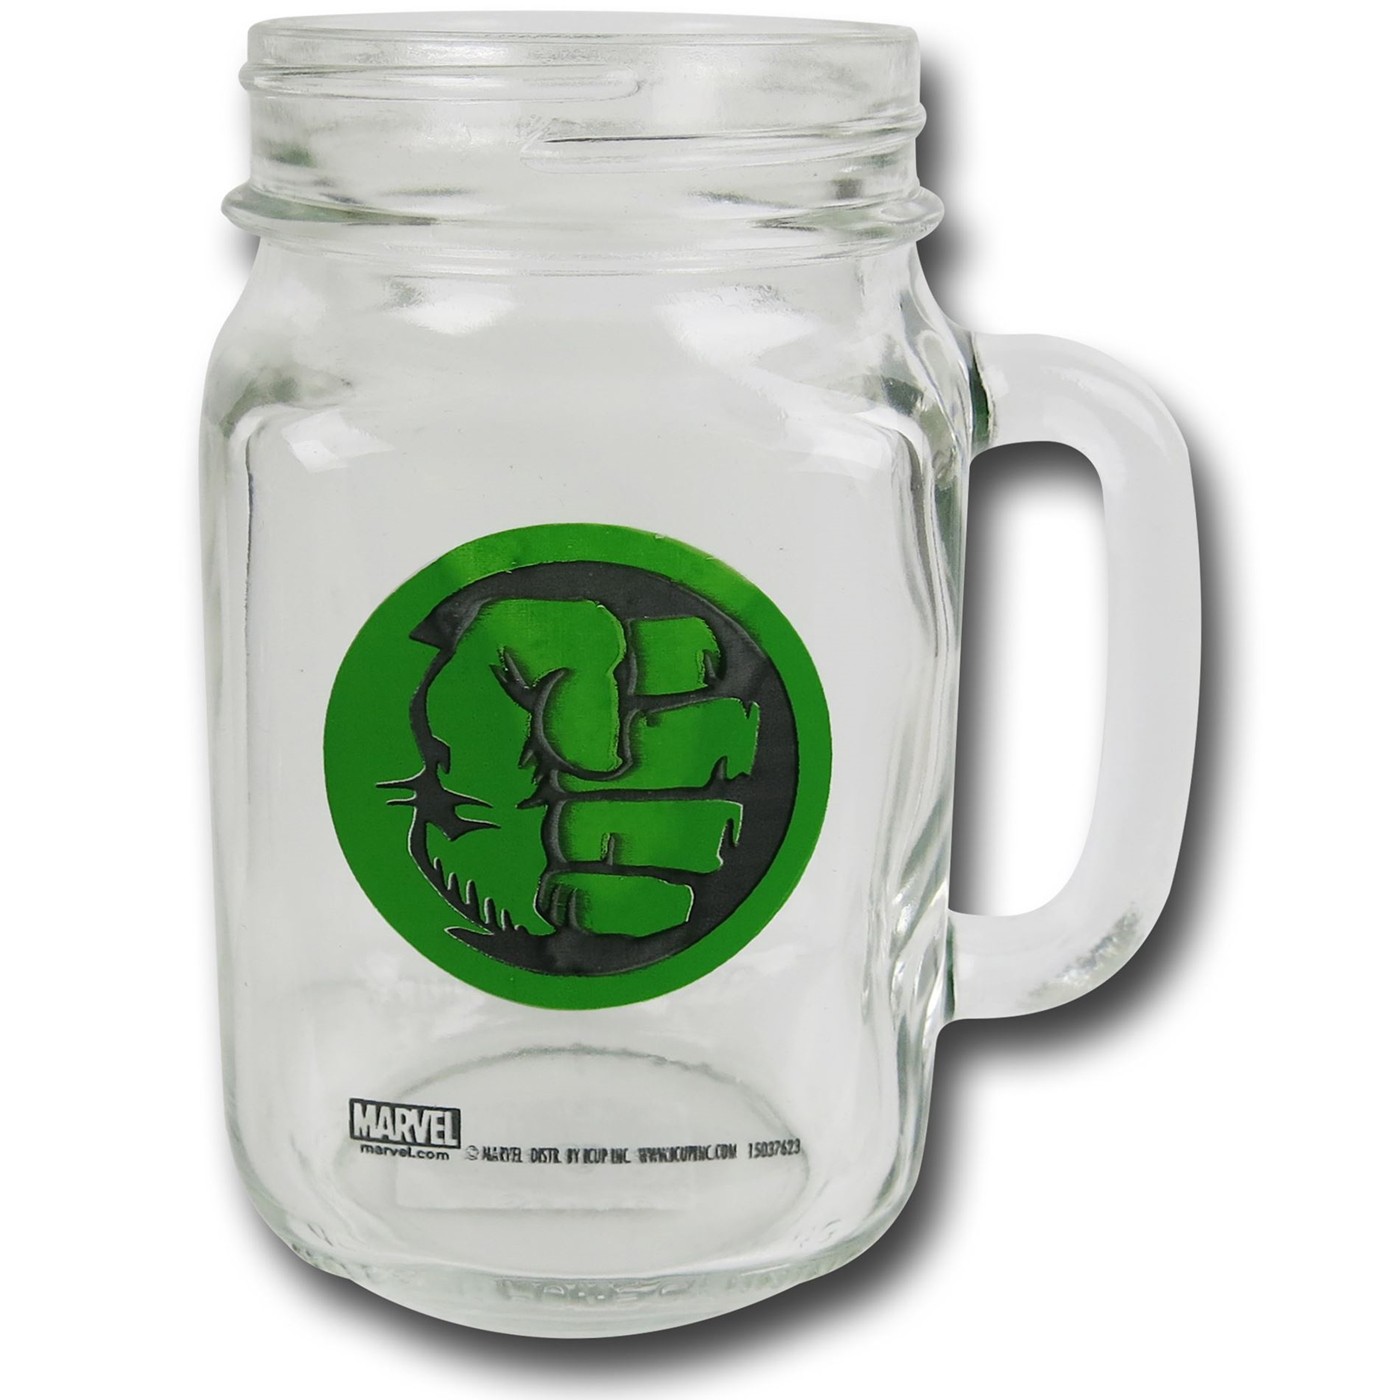 Hulk Fist Mason Jar Mug